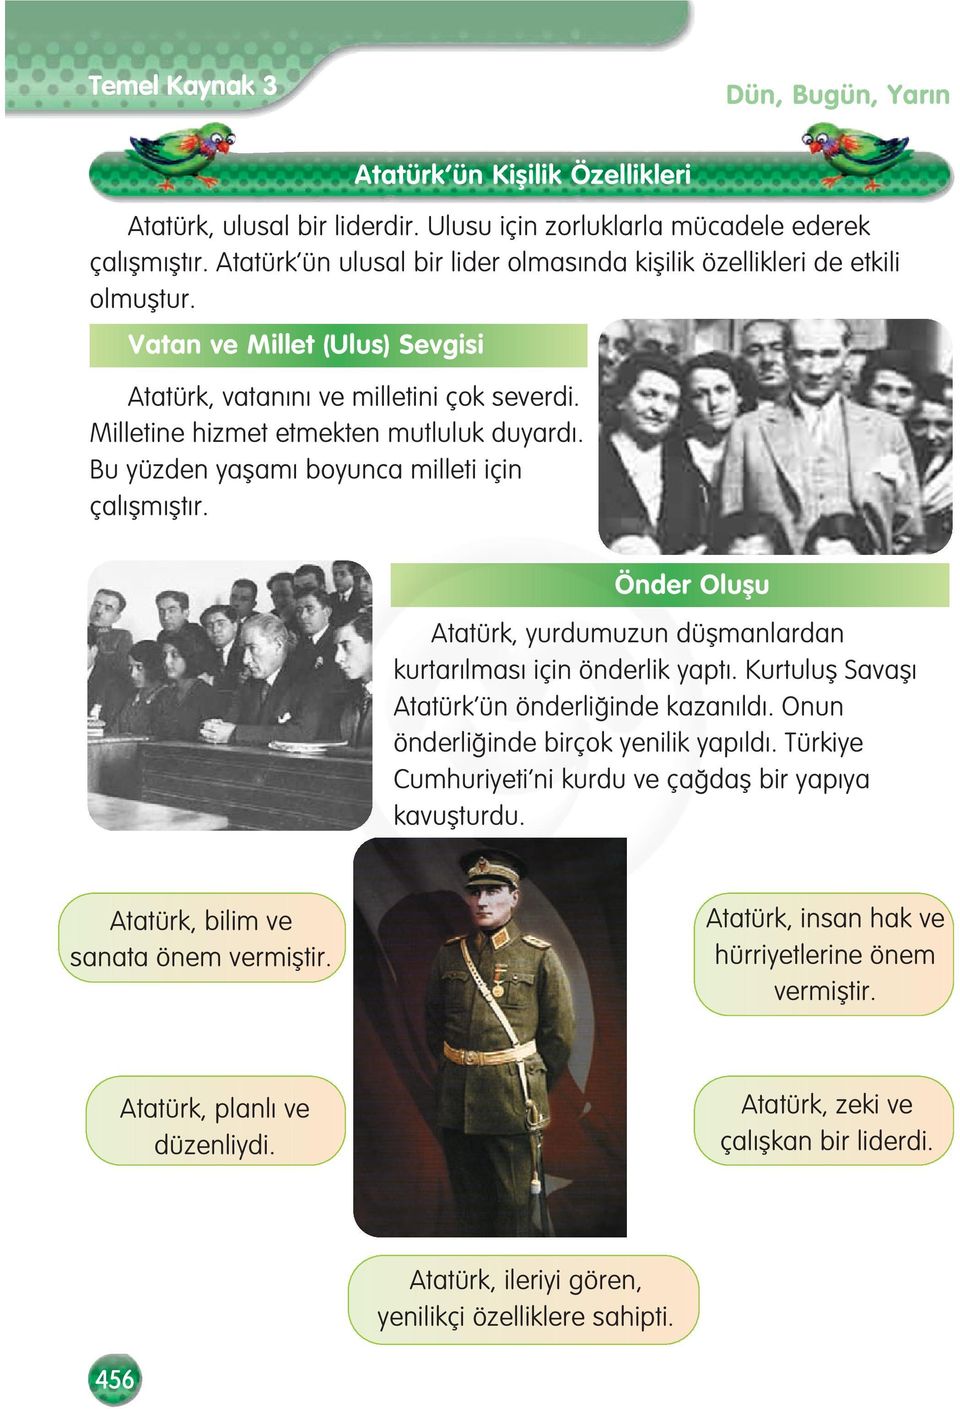 Bu yüzden yaflam boyunca milleti için çal flm flt r. Önder Oluflu Atatürk, yurdumuzun düflmanlardan kurtar lmas için önderlik yapt. Kurtulufl Savafl Atatürk ün önderli inde kazan ld.